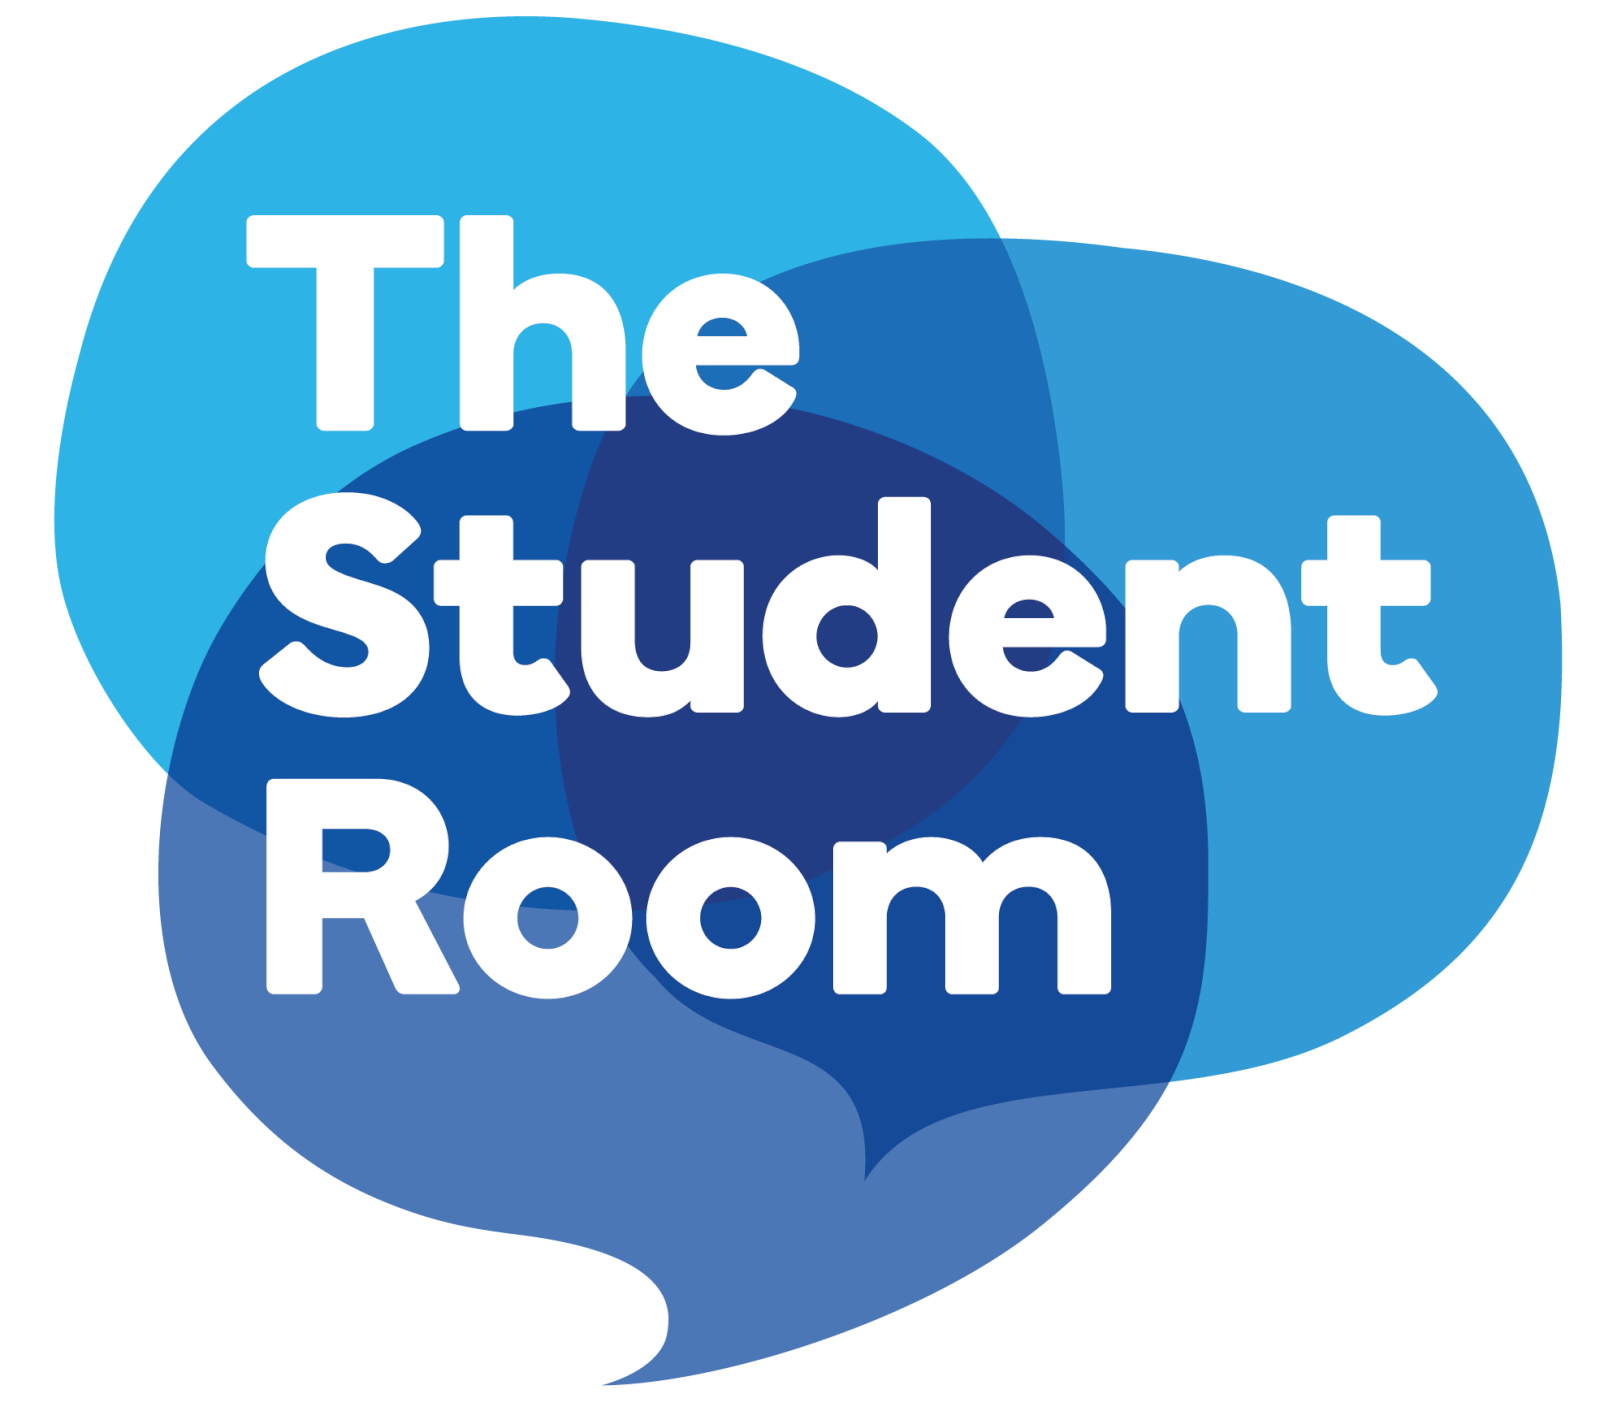 Speak to P2P on The Student Room Practice to Progress